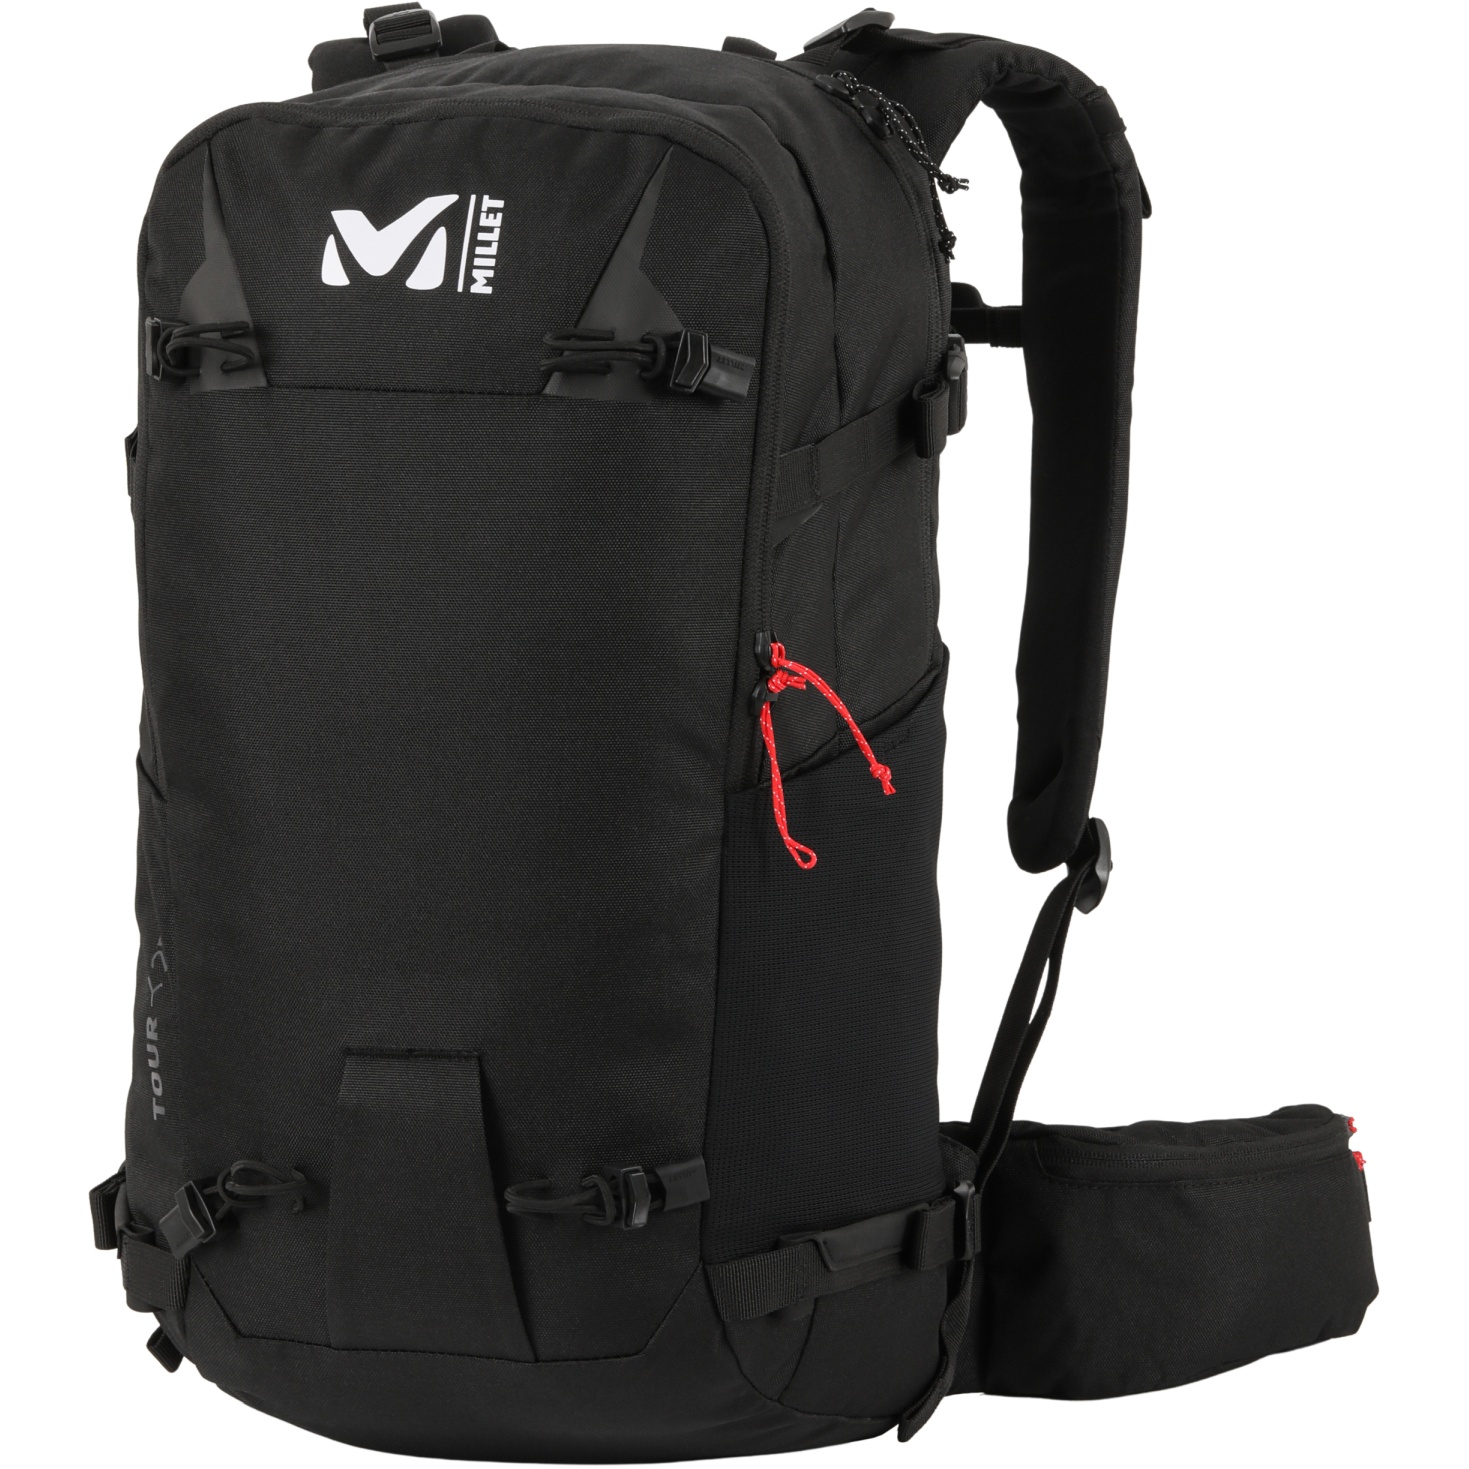 Picture of Millet Tour 25 Ski Backpack - Black